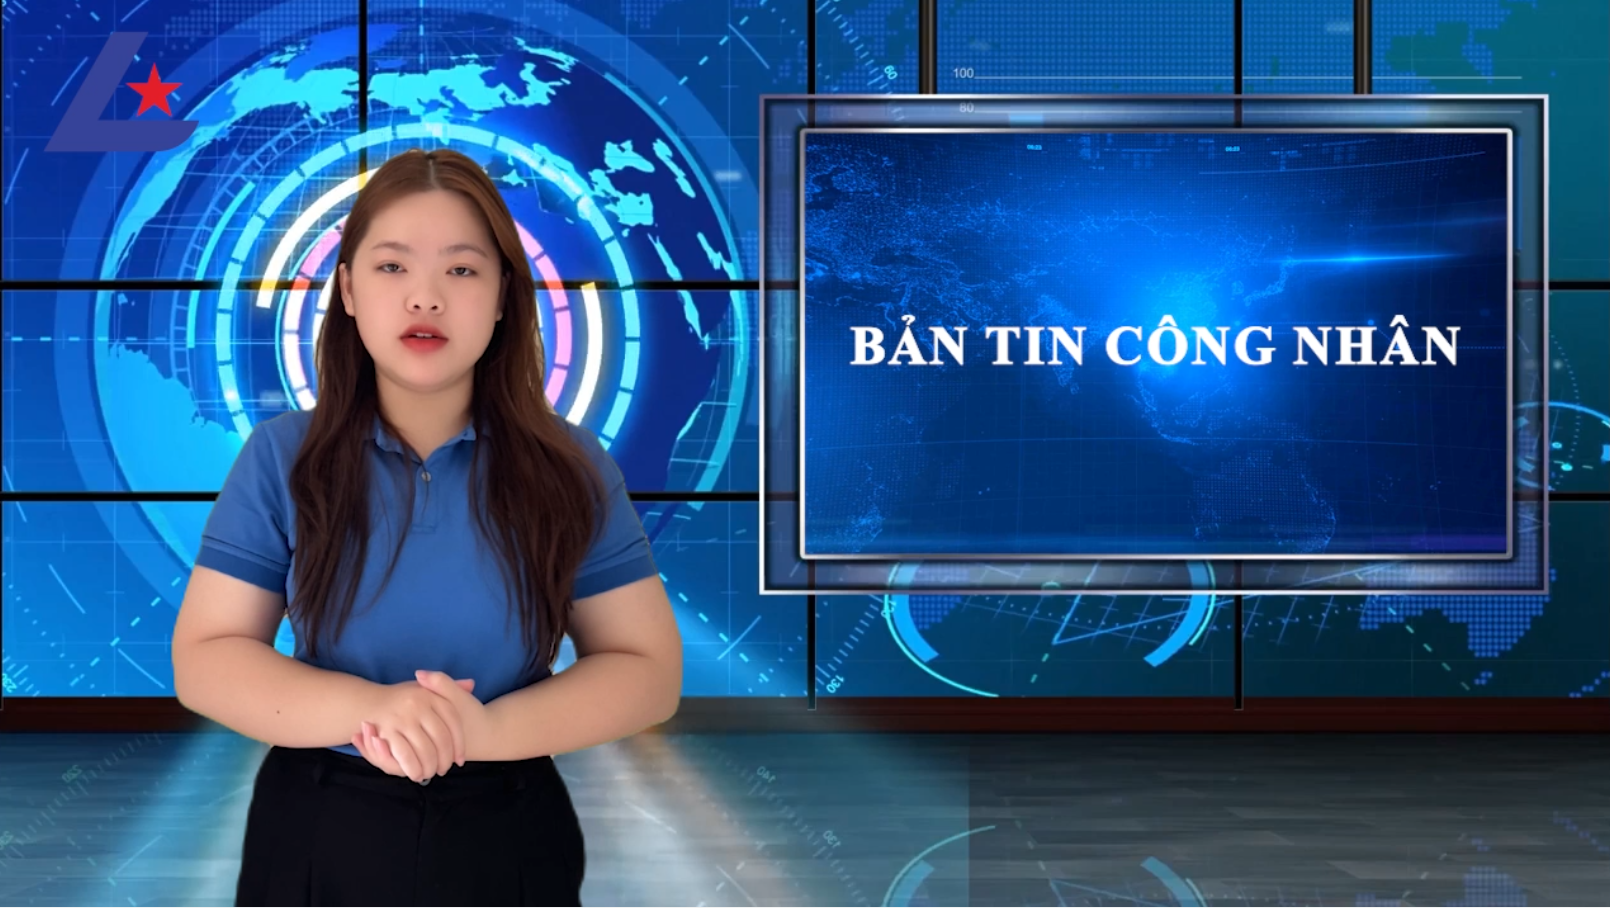 Bản tin công nhân: Hà Nội dừng giải quyết bảo hiểm thất nghiệp trực tiếp tại 13 sàn vệ tinh